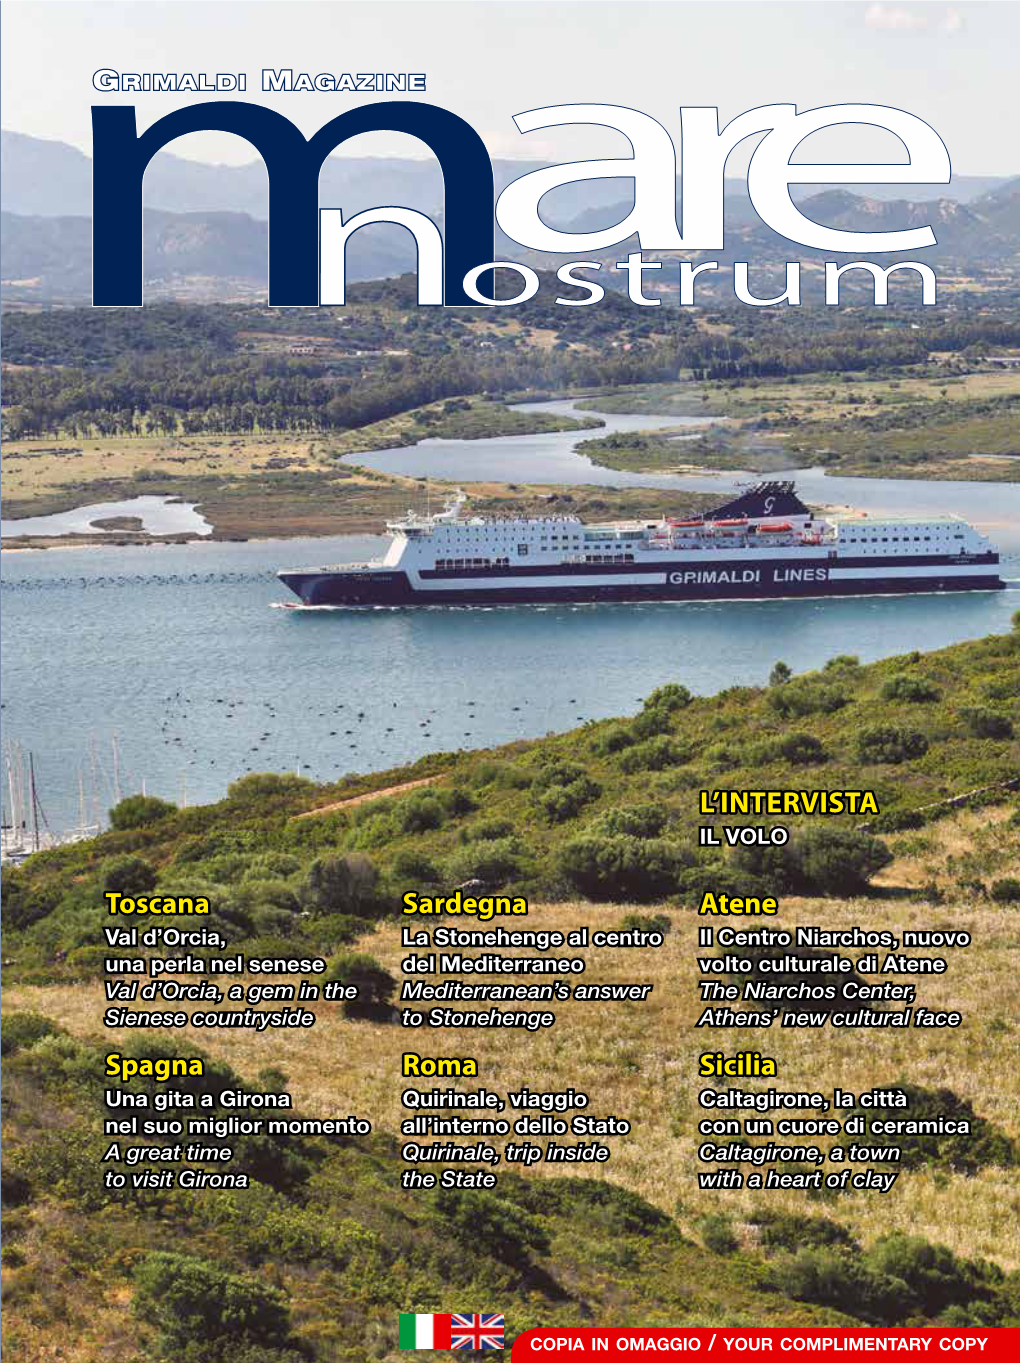 Grimaldi Magazine Mare Nostrum (Year XIII